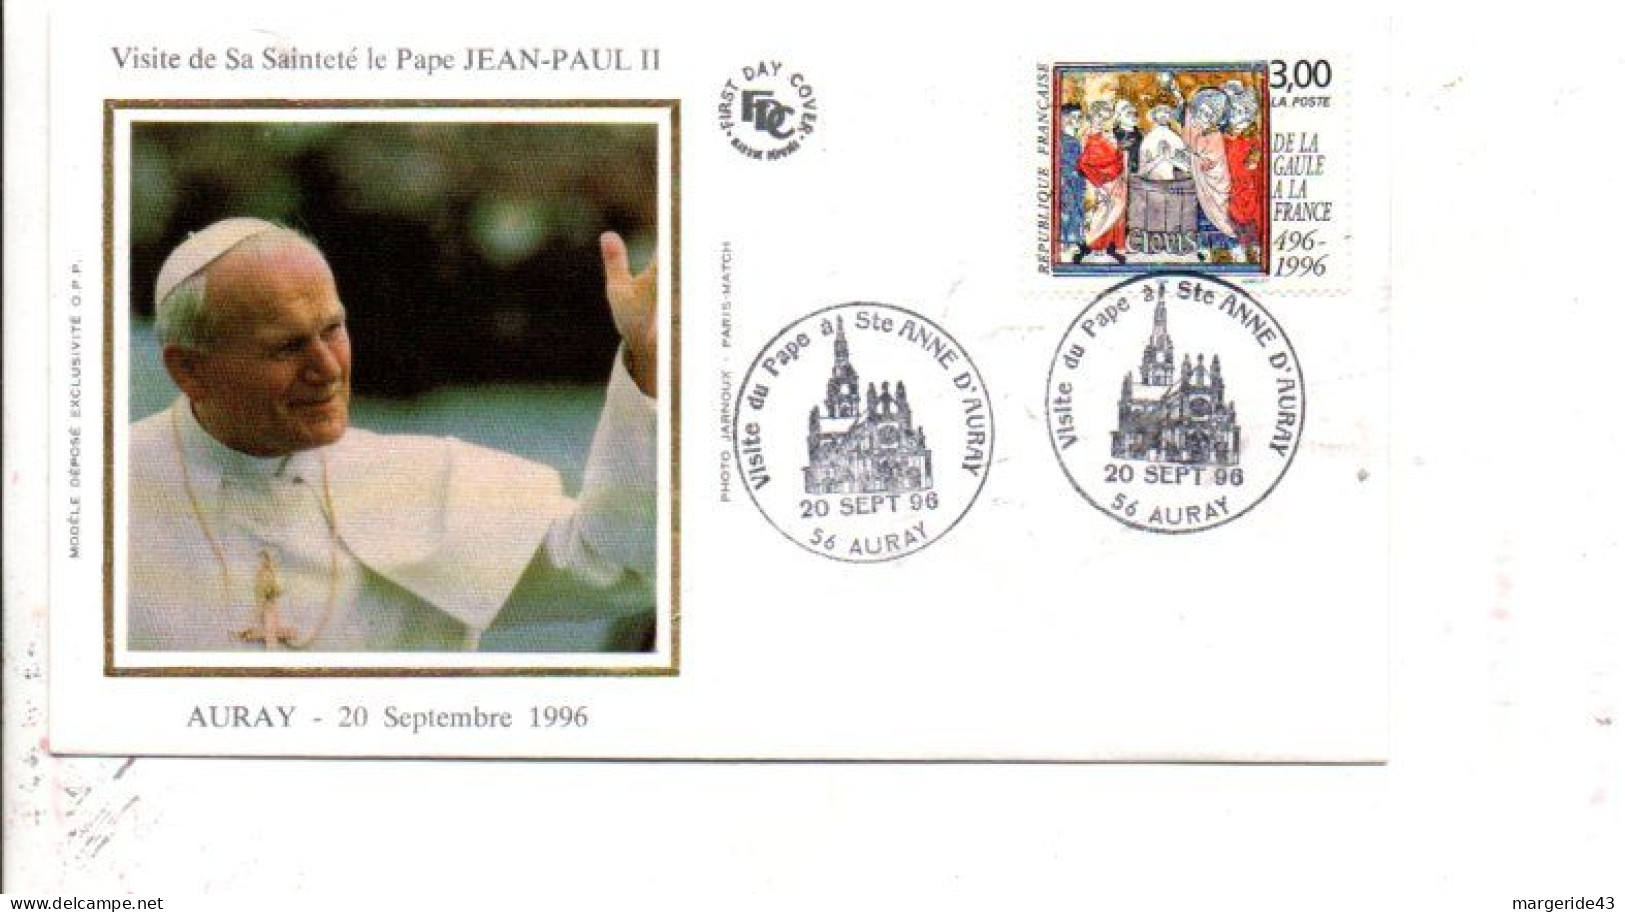 VISITE DU PAPE JEAN PAUL II à AURAY 1996 - Cachets Commémoratifs